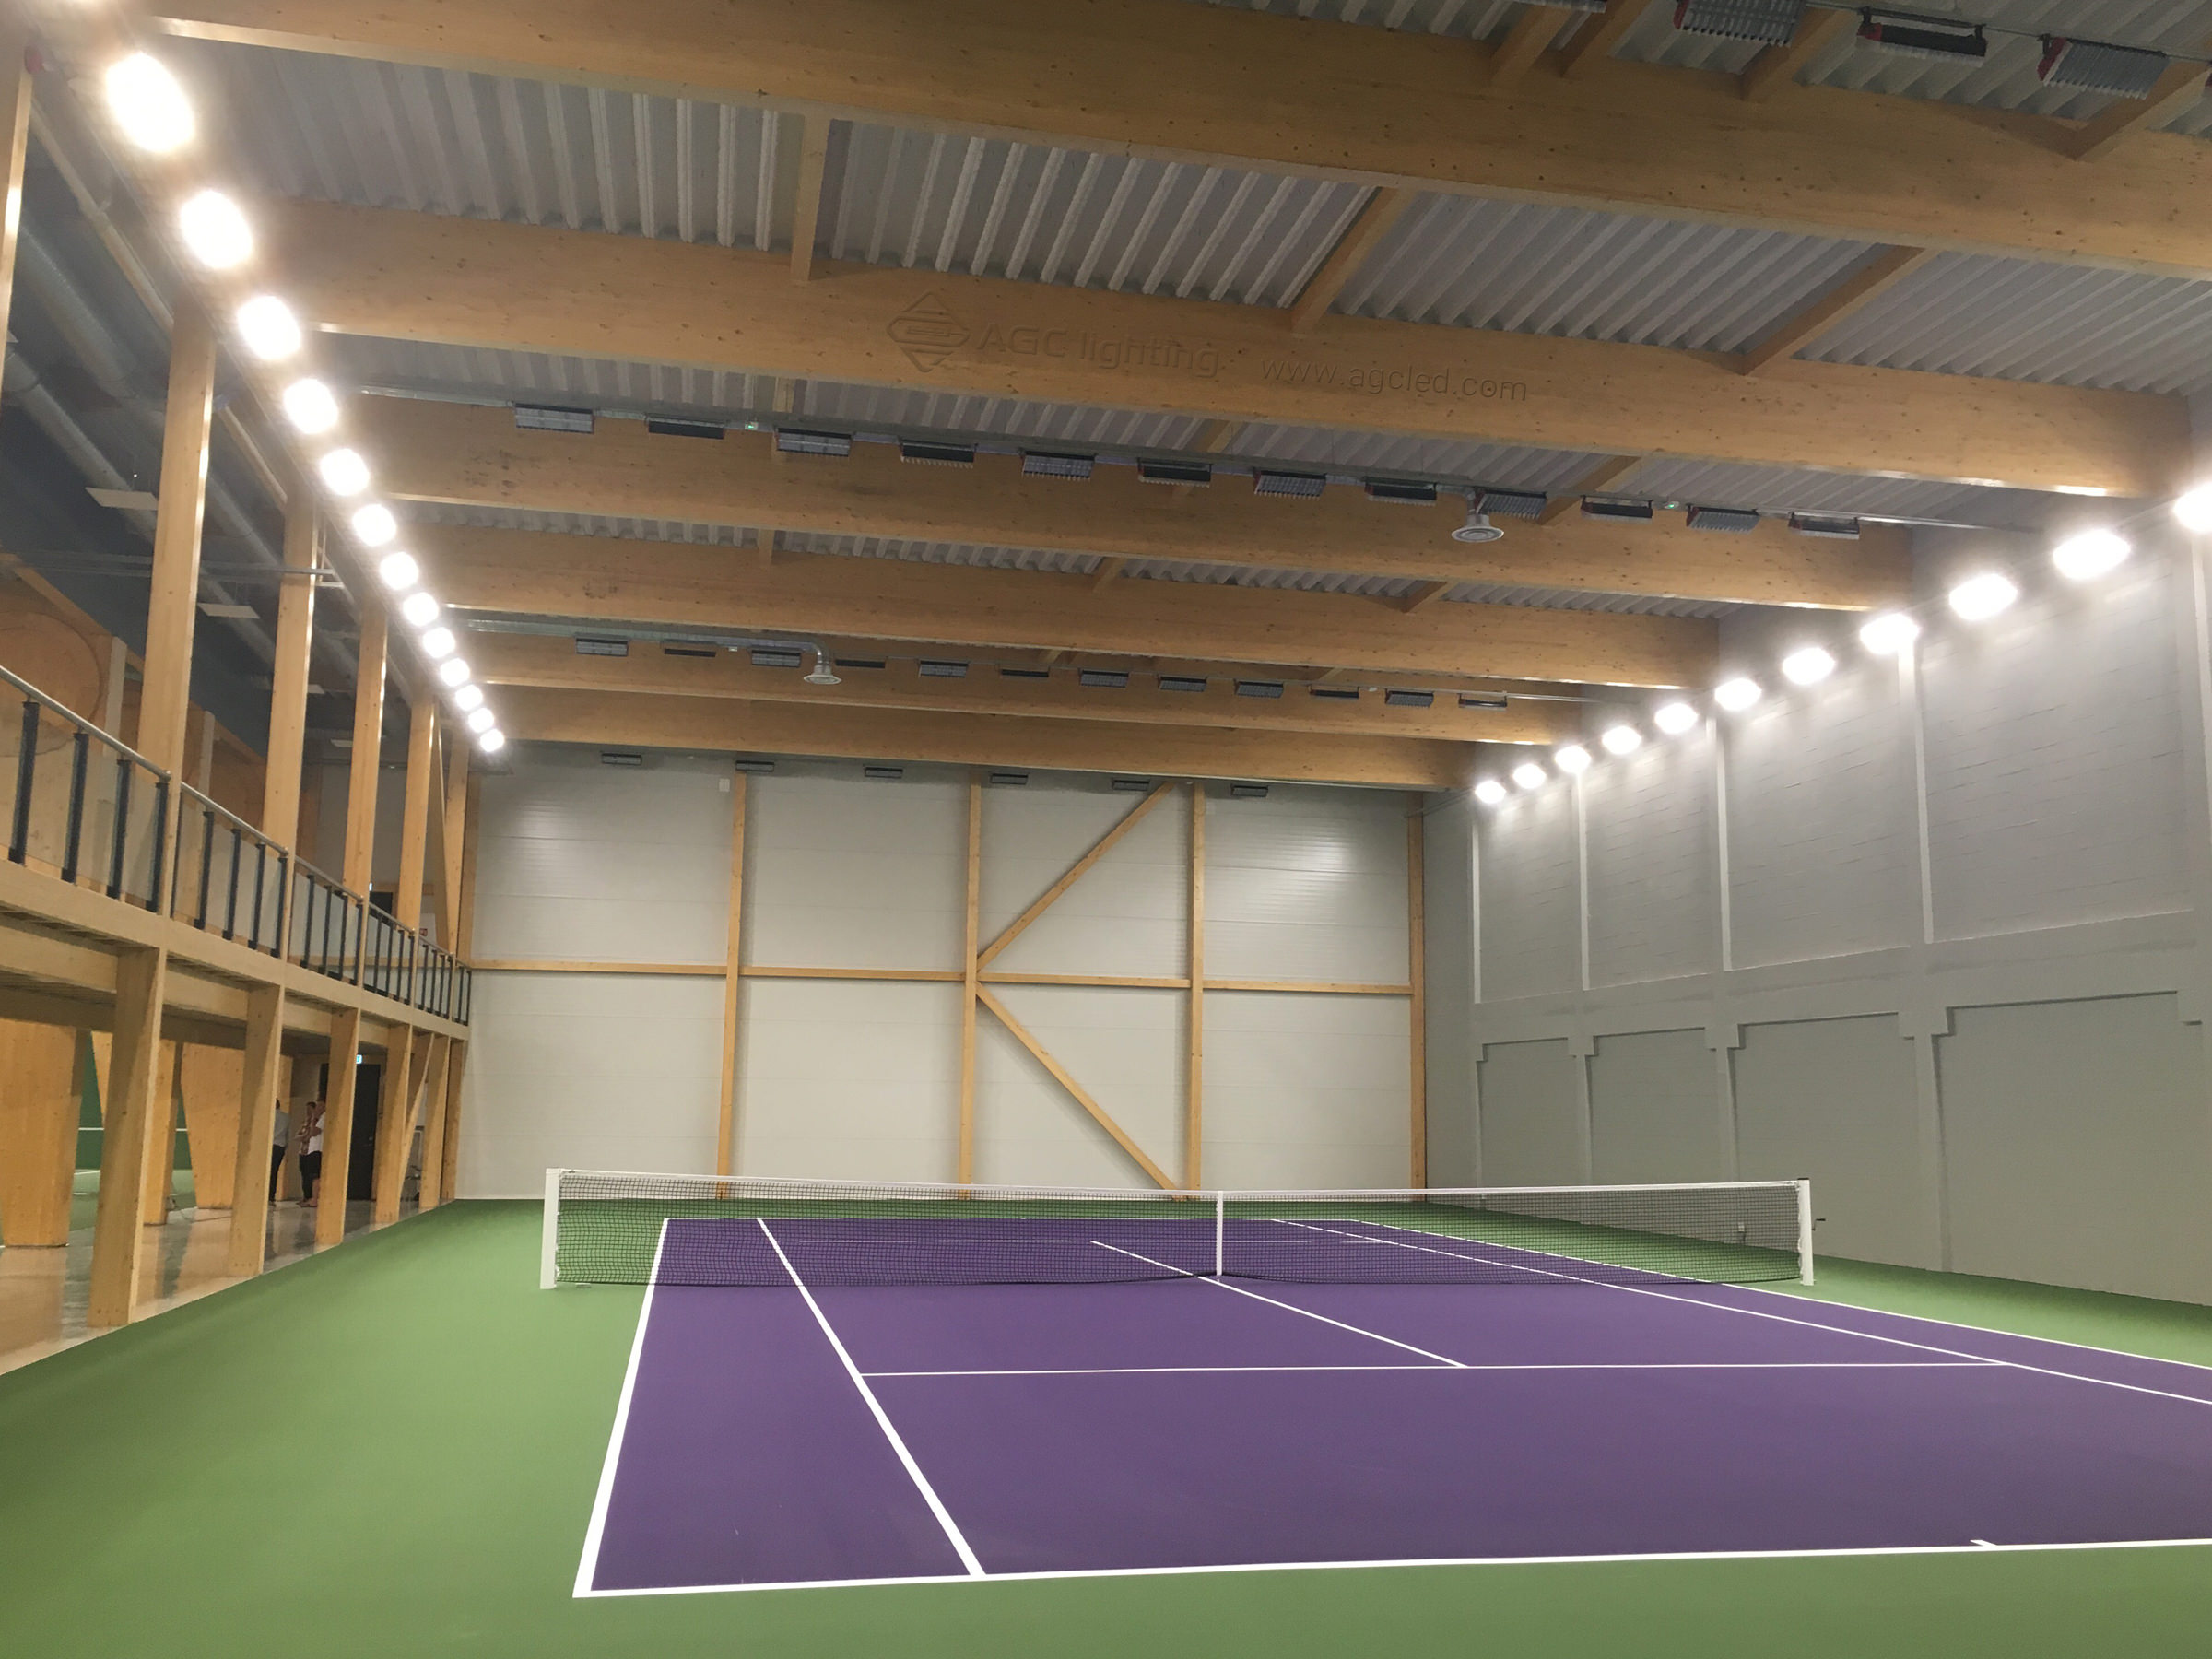 221pcs linear high bay light for badminton court lighting